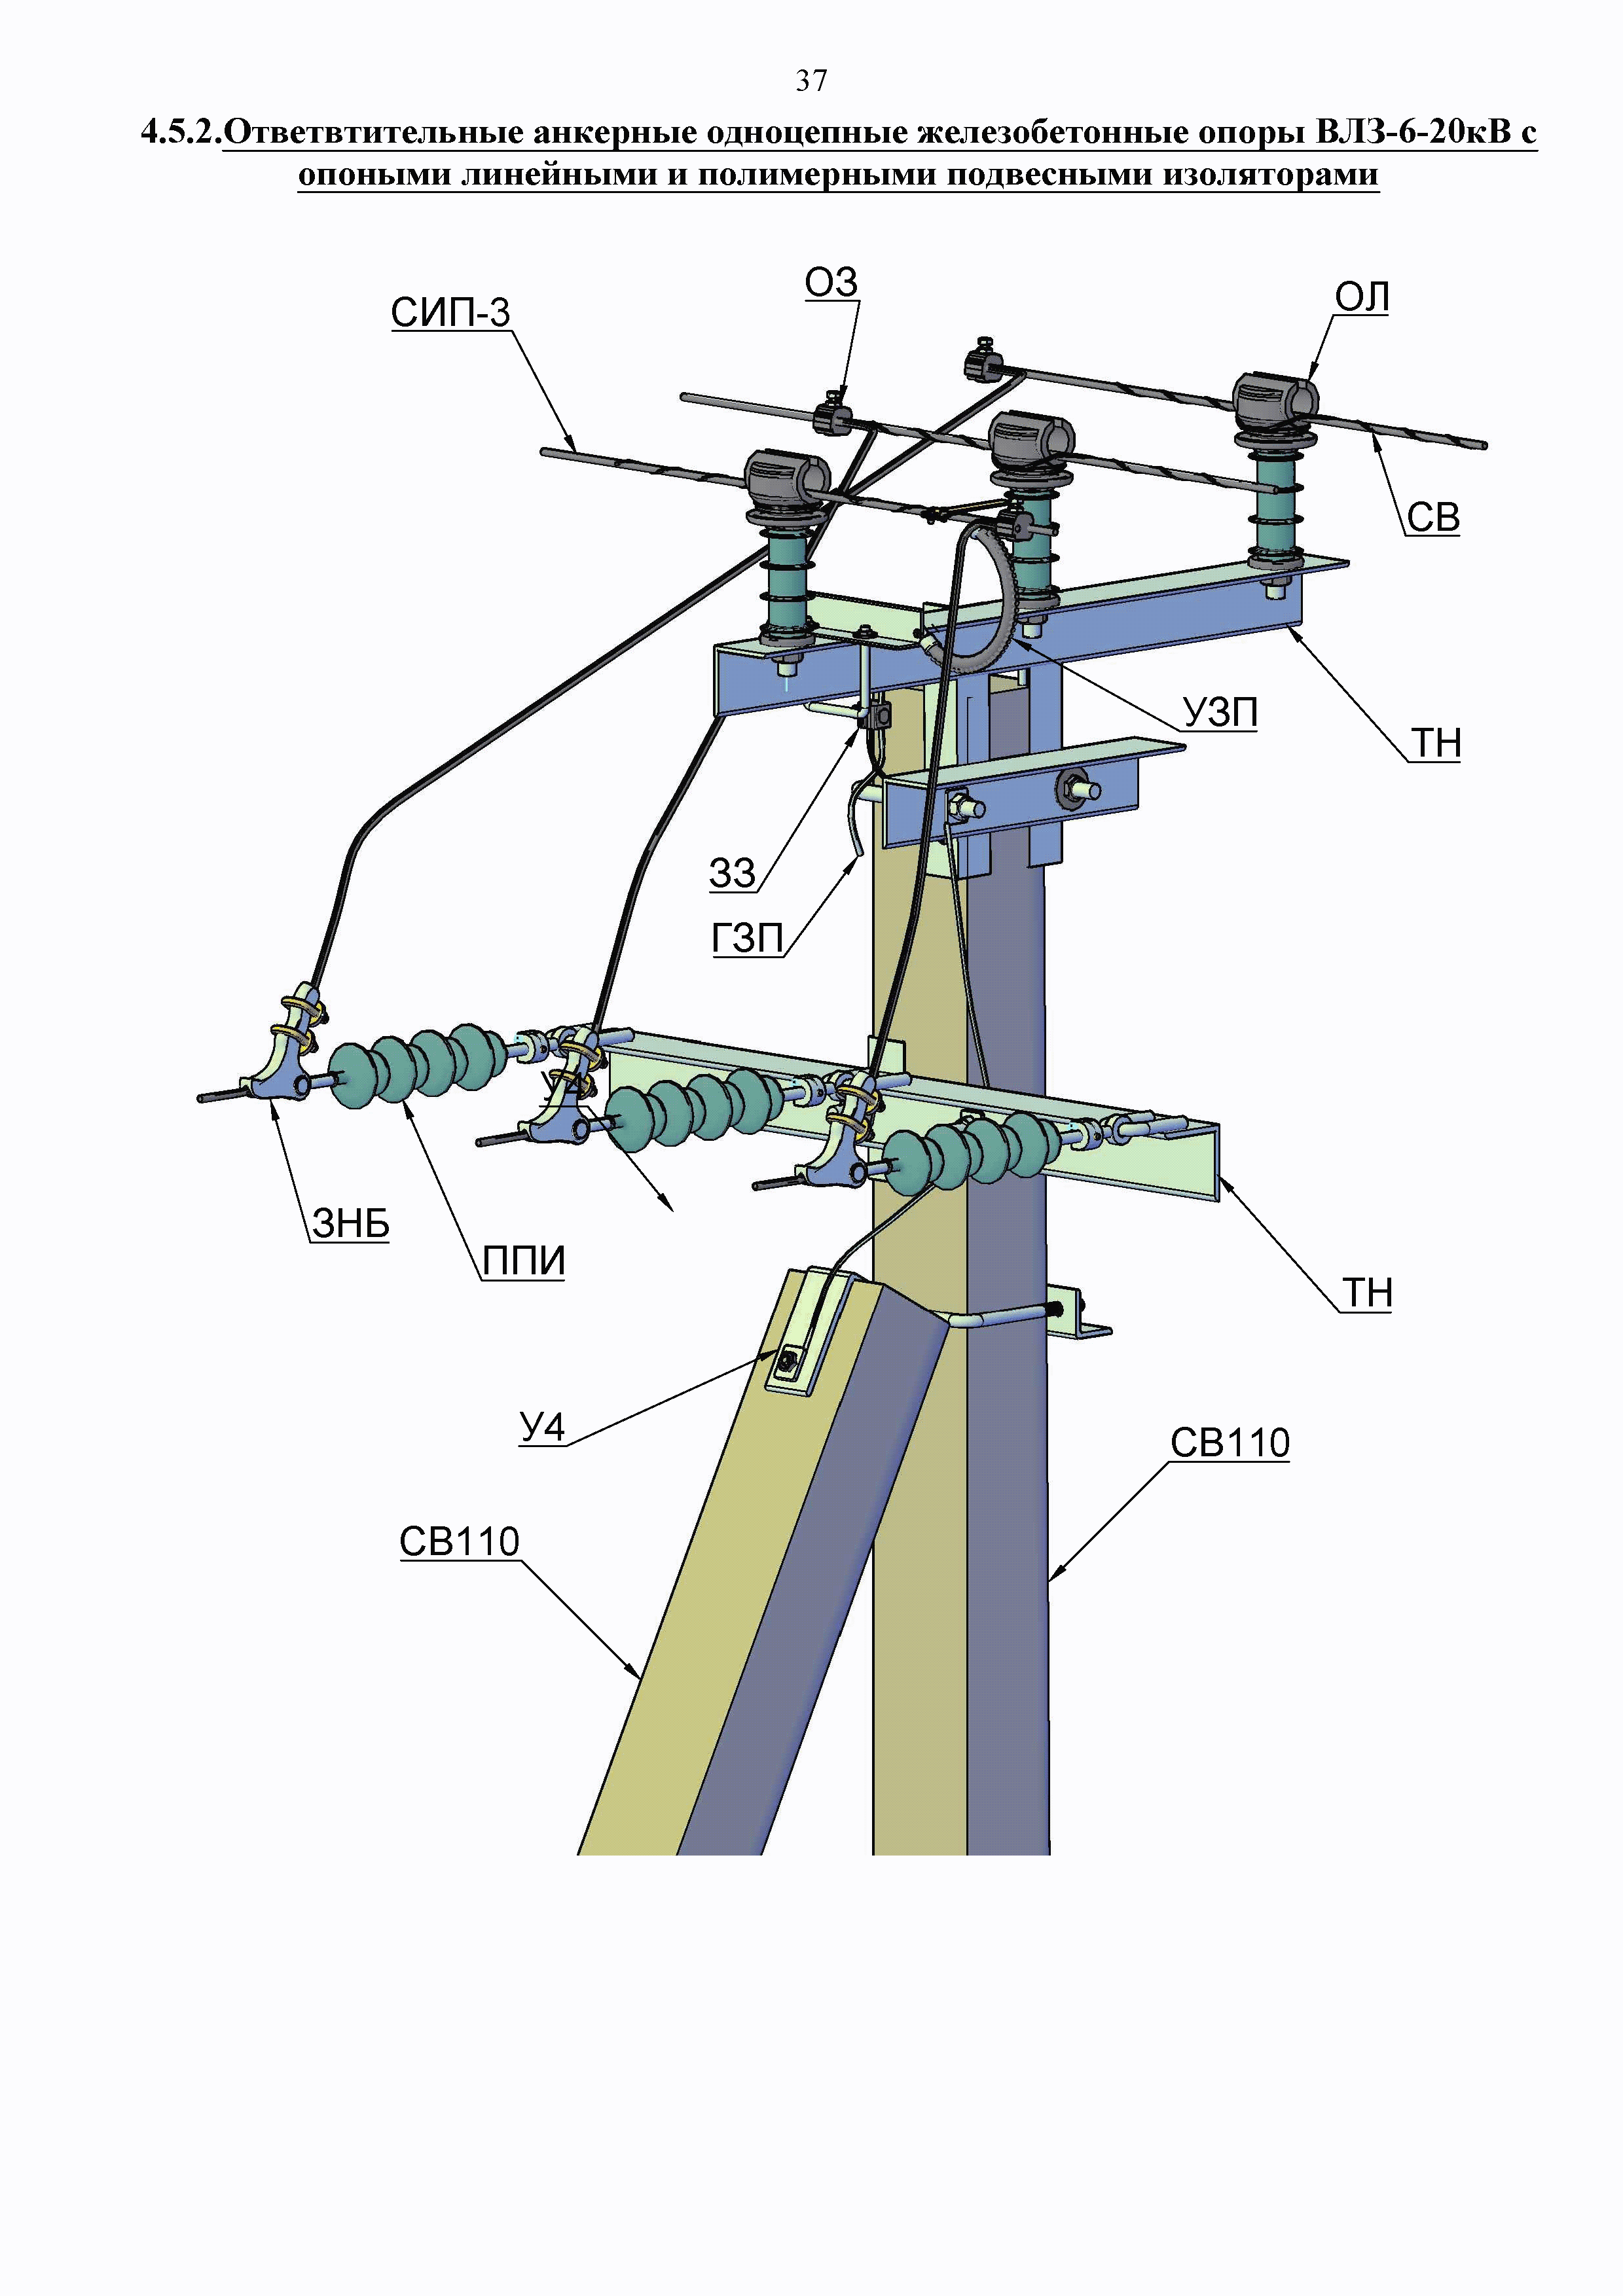 Применение высоковольтного провода сип-3